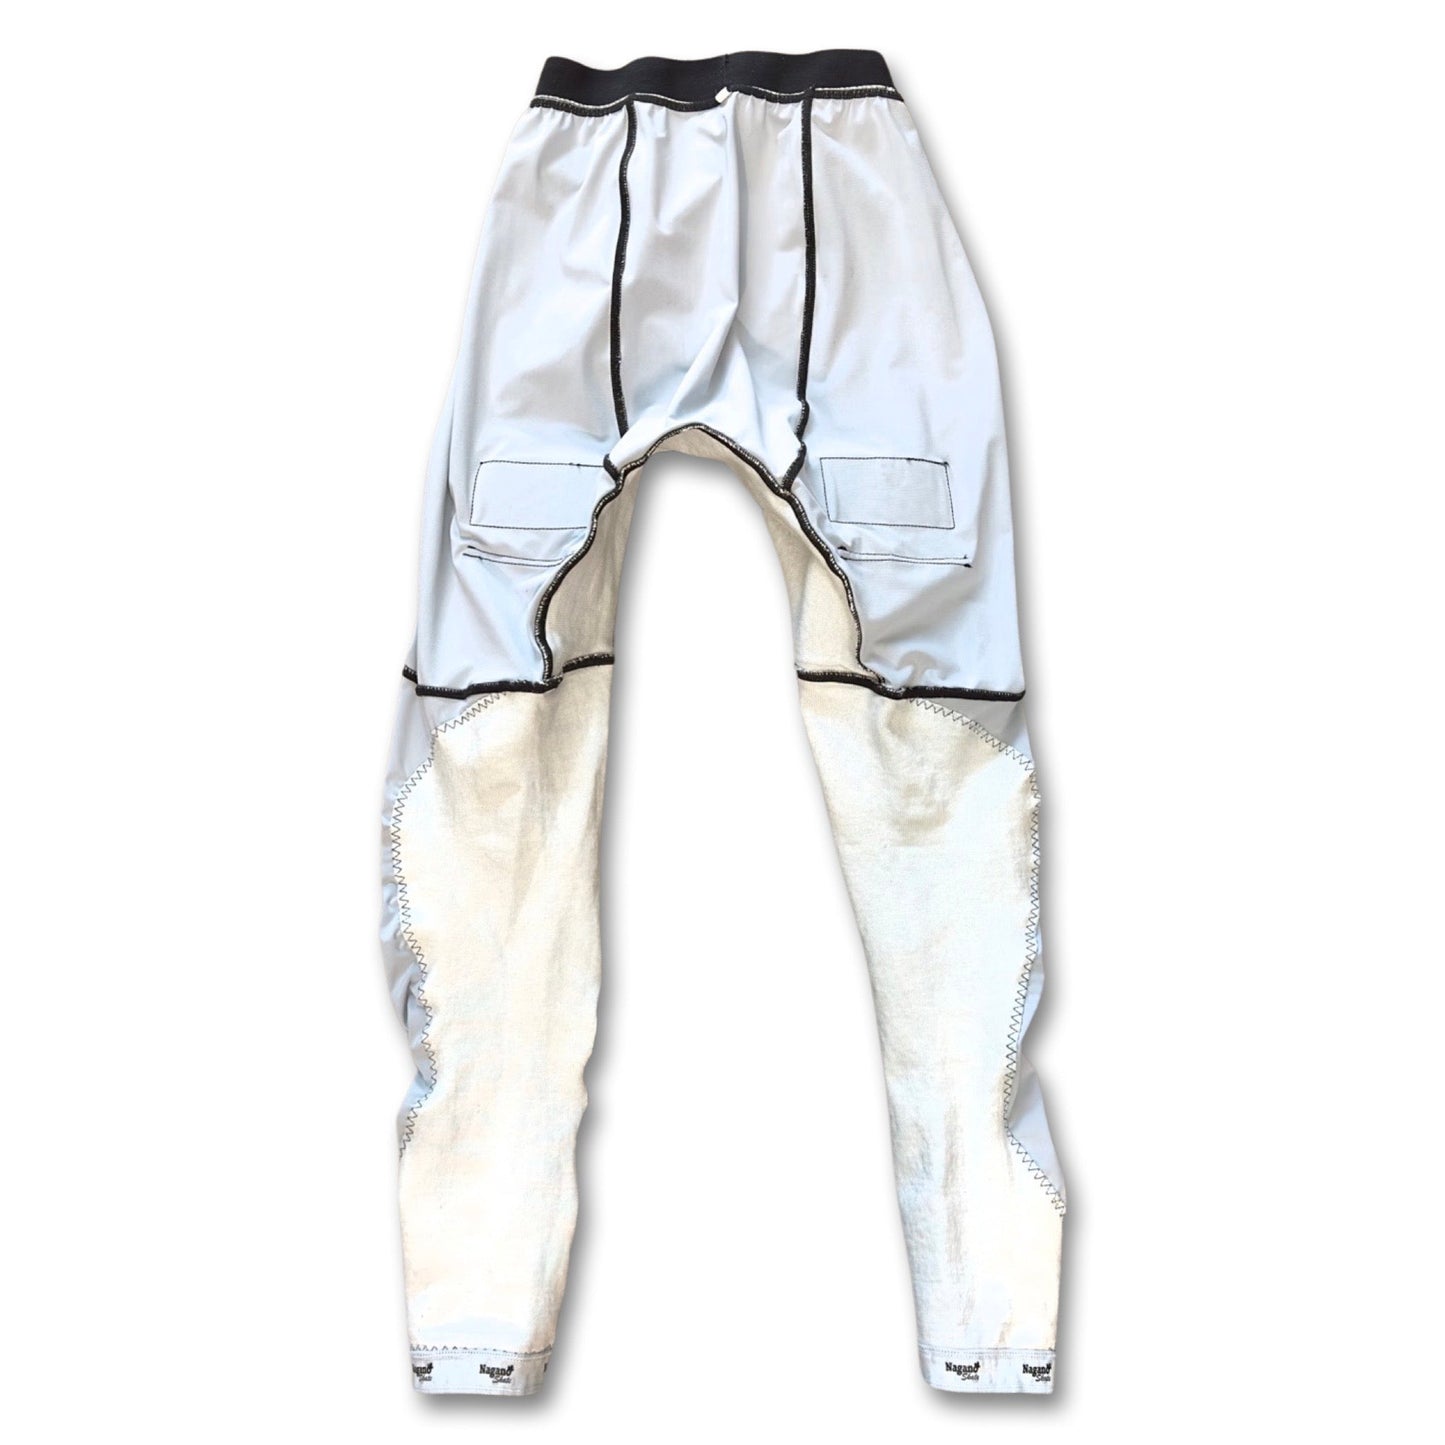 Pantalon sous-vêtement léger avec IMPERIUM anti-lacération